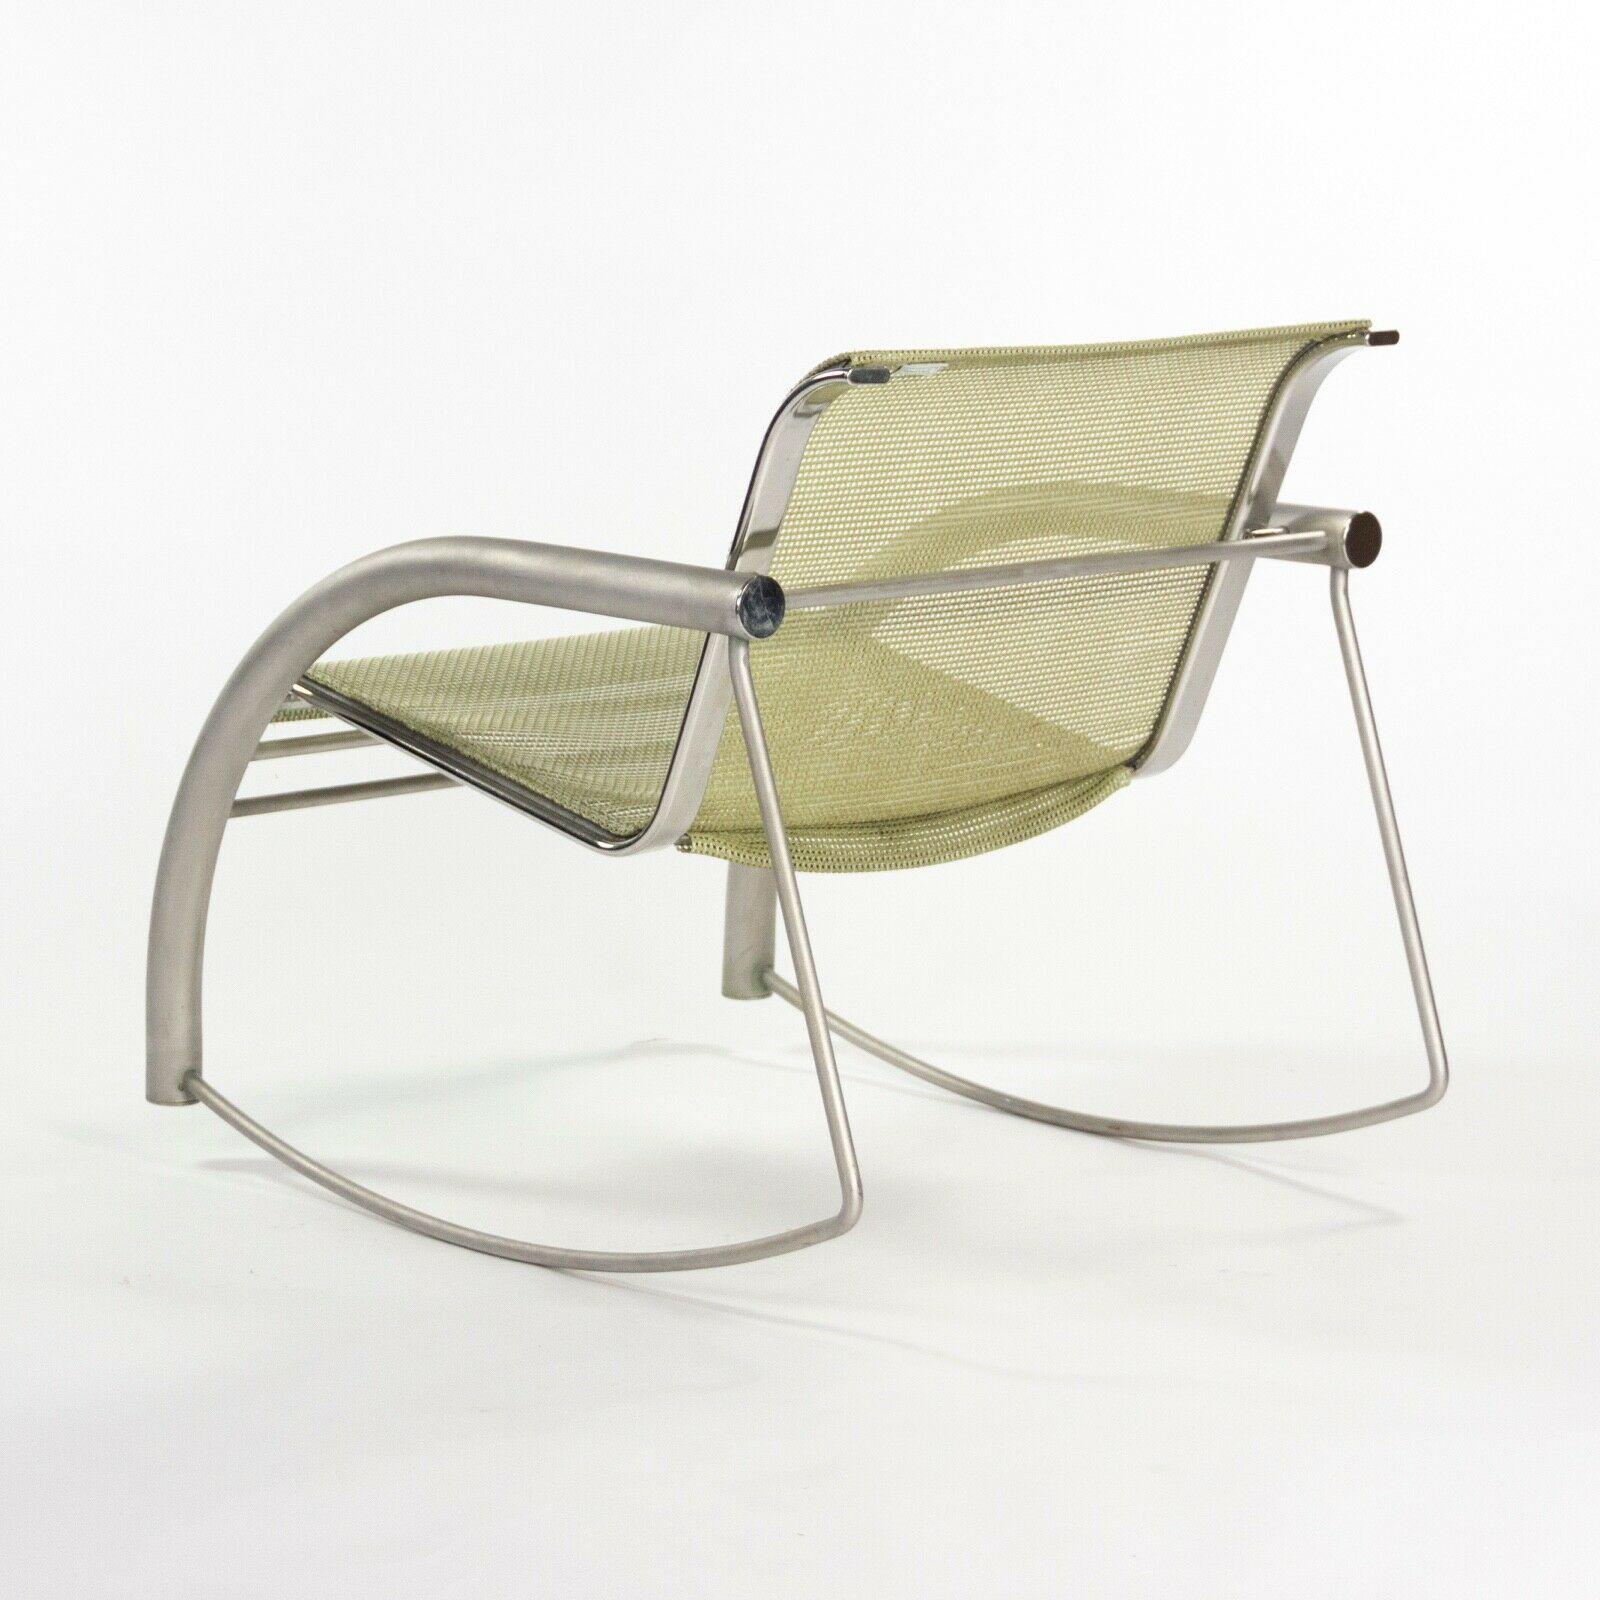 Acier inoxydable Prototype de chaise à bascule Richard Schultz 2002 Collection en acier inoxydable et maille